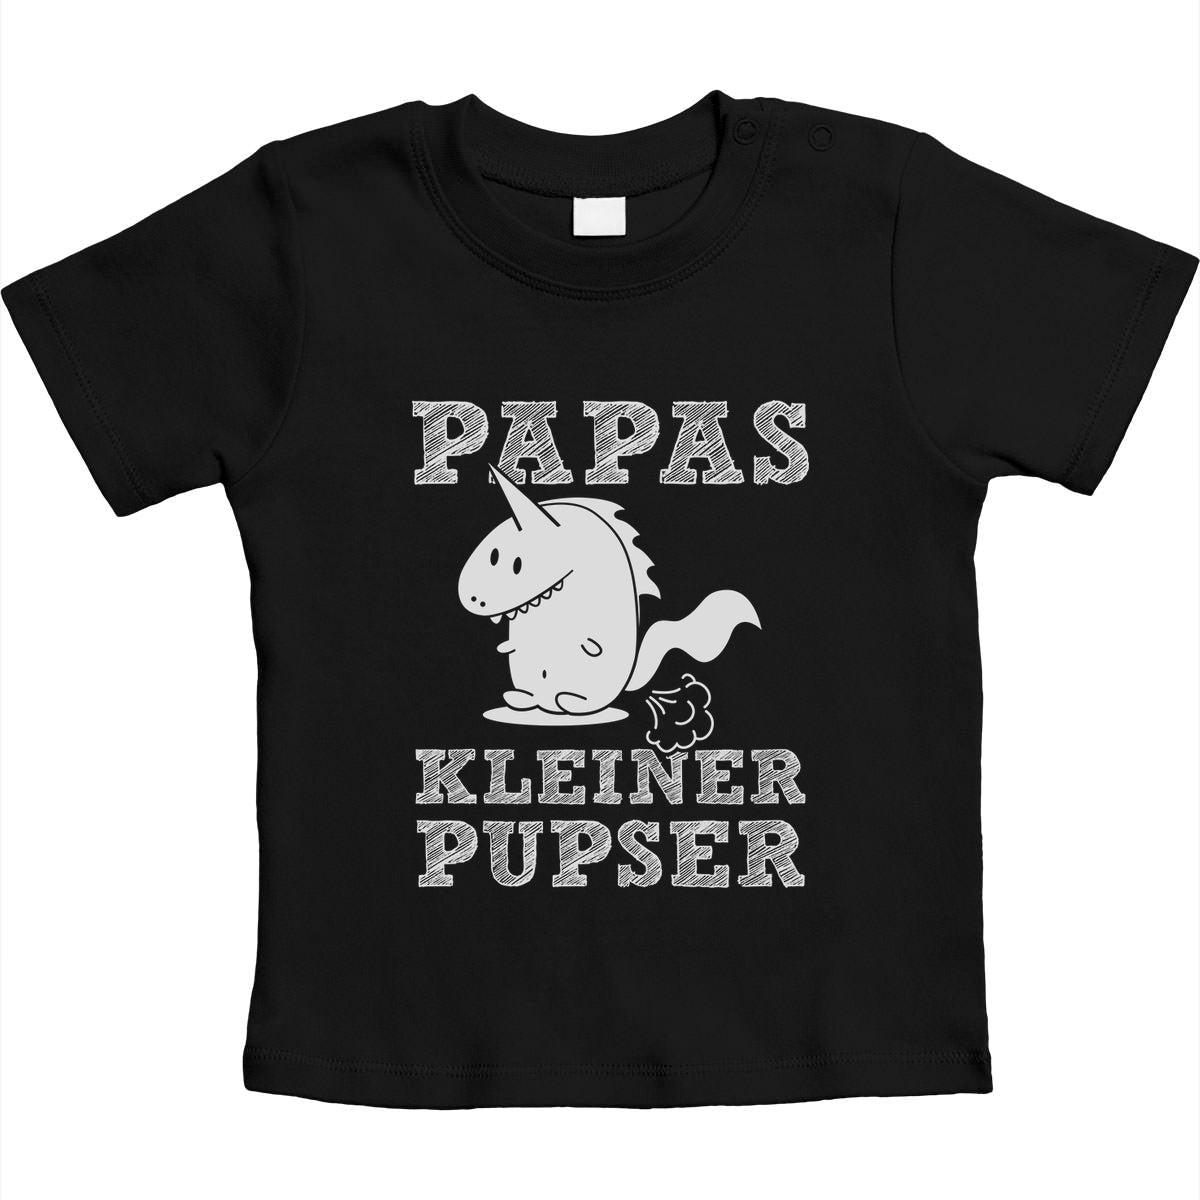 Design für Babys - Papas kleiner Pupser Dino Unisex Baby T-Shirt Gr. 66-93